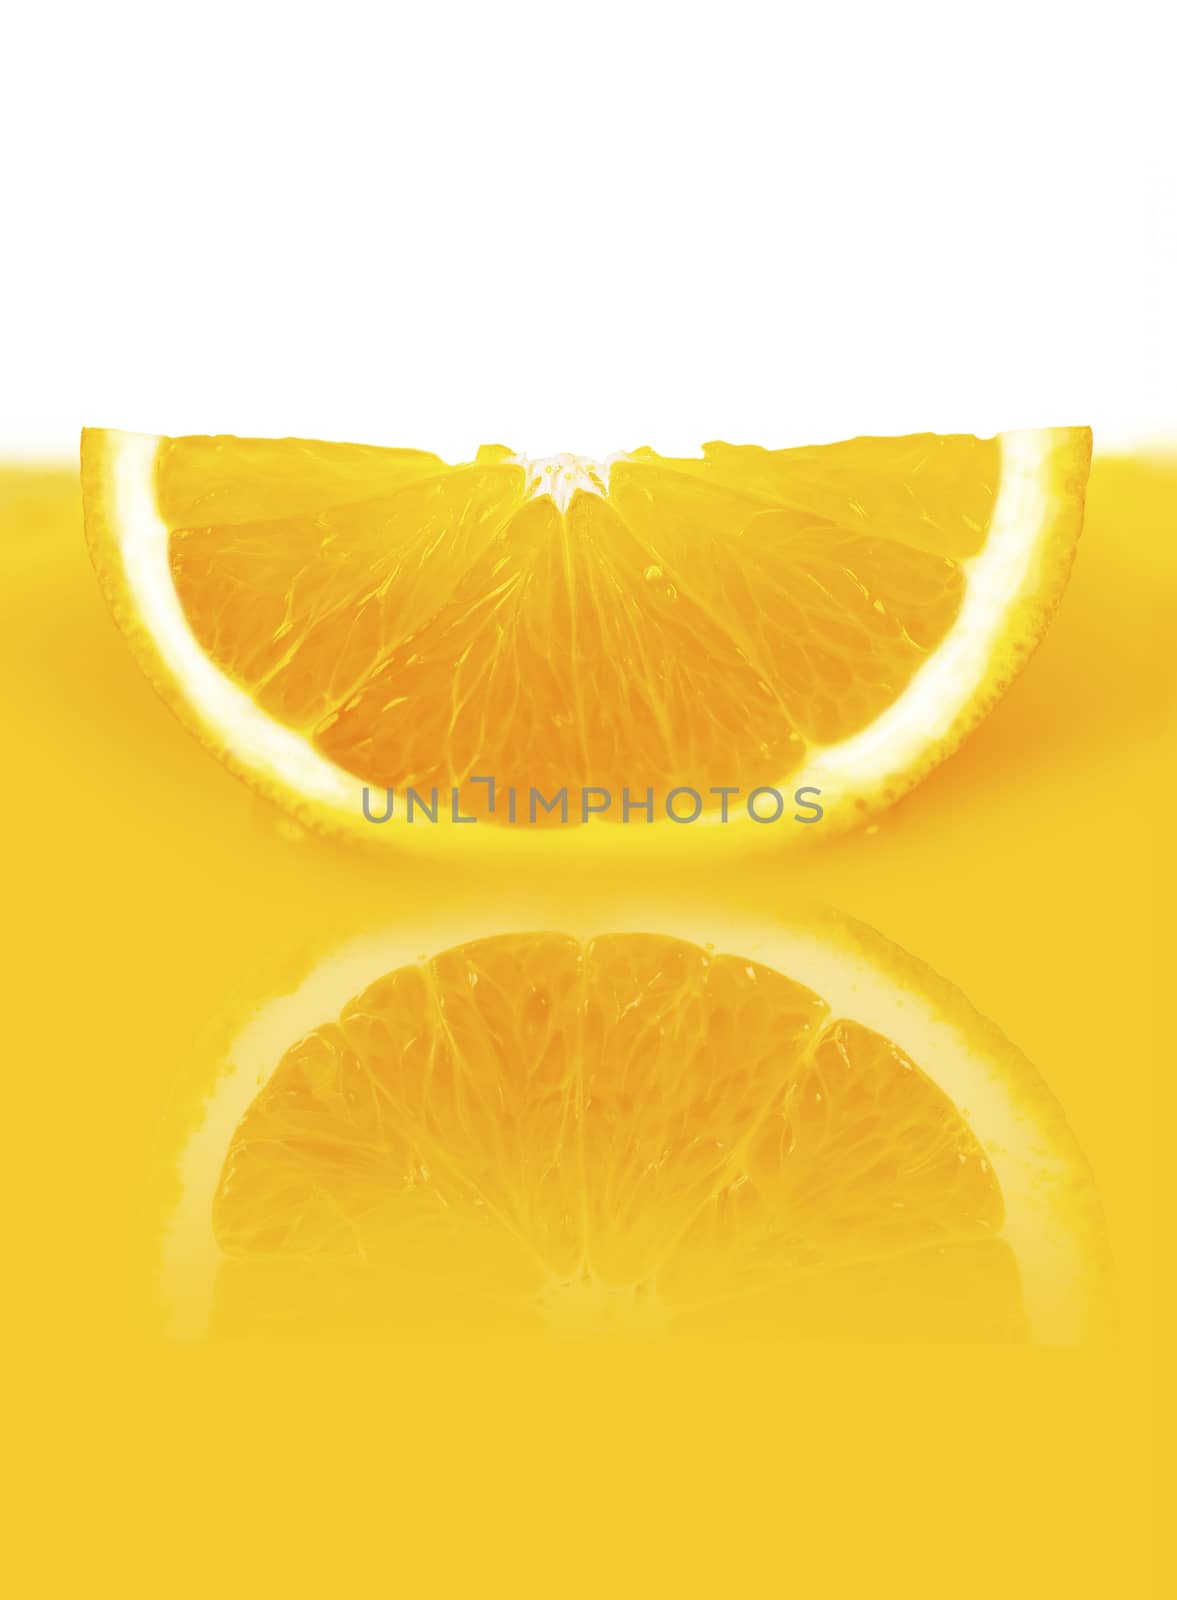  slice in orange juice by MegaArt